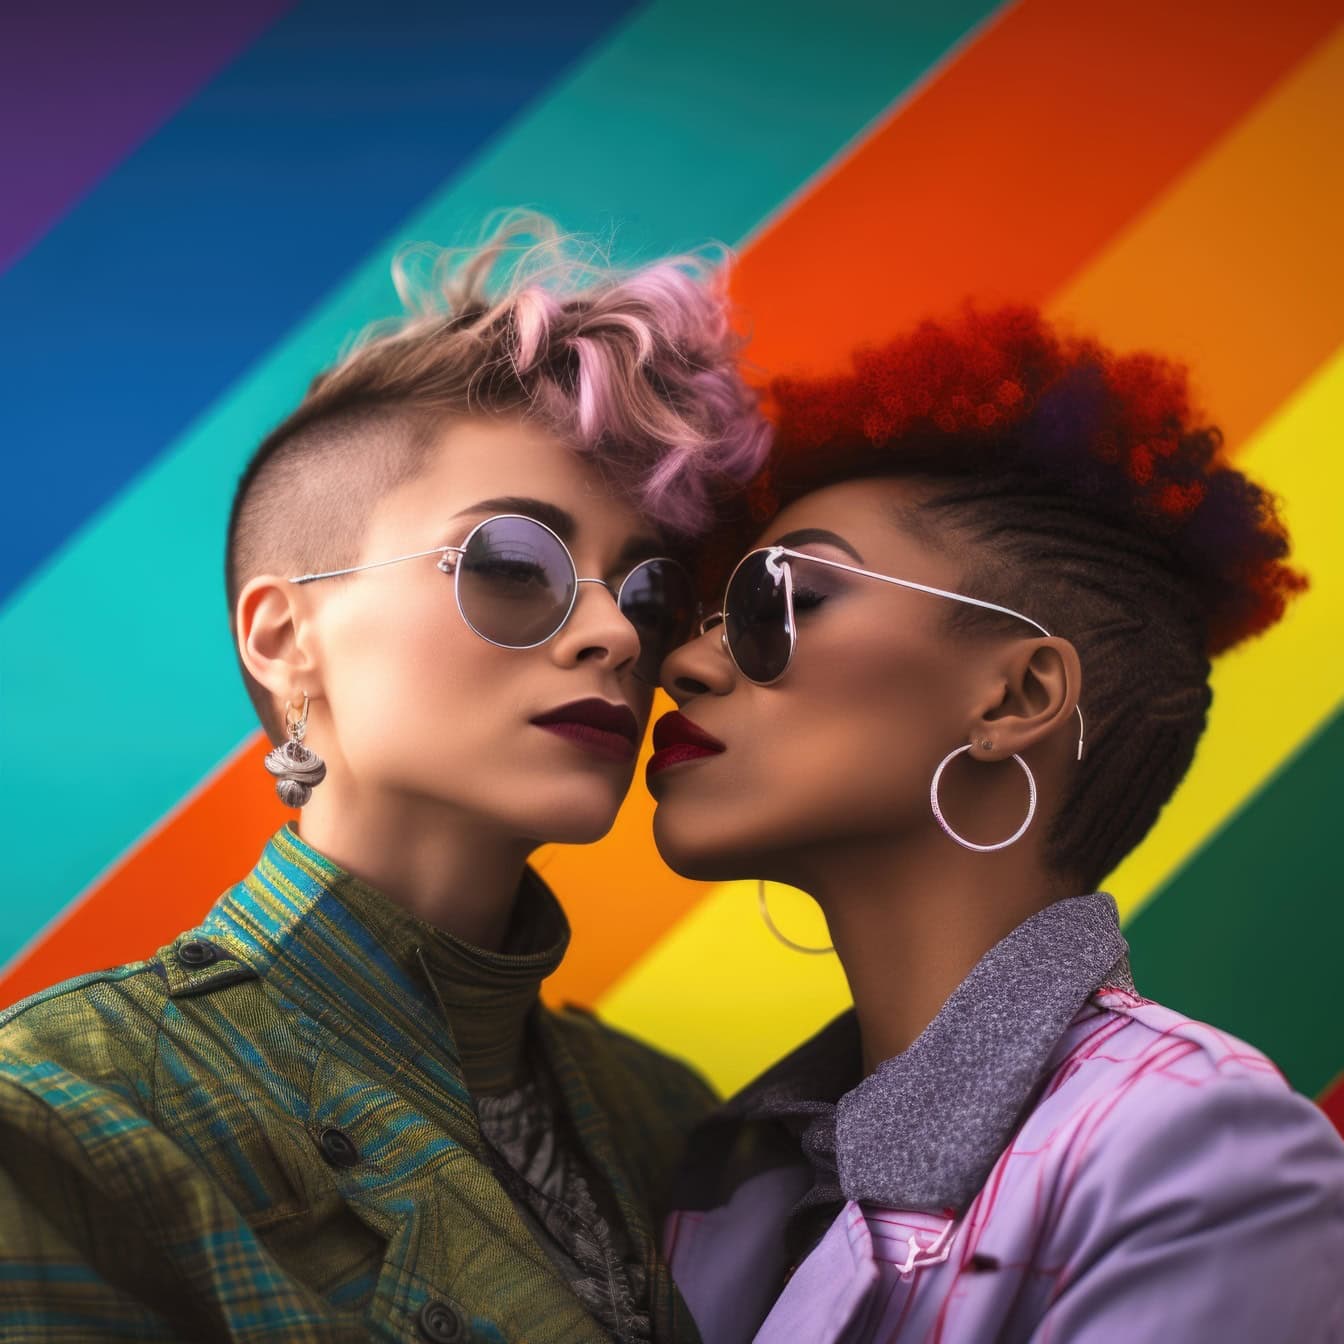 To lesbiske tenåringsjenter med bakgrunn i regnbuefarger, en illustrasjon av LHBT-samfunnets frihet